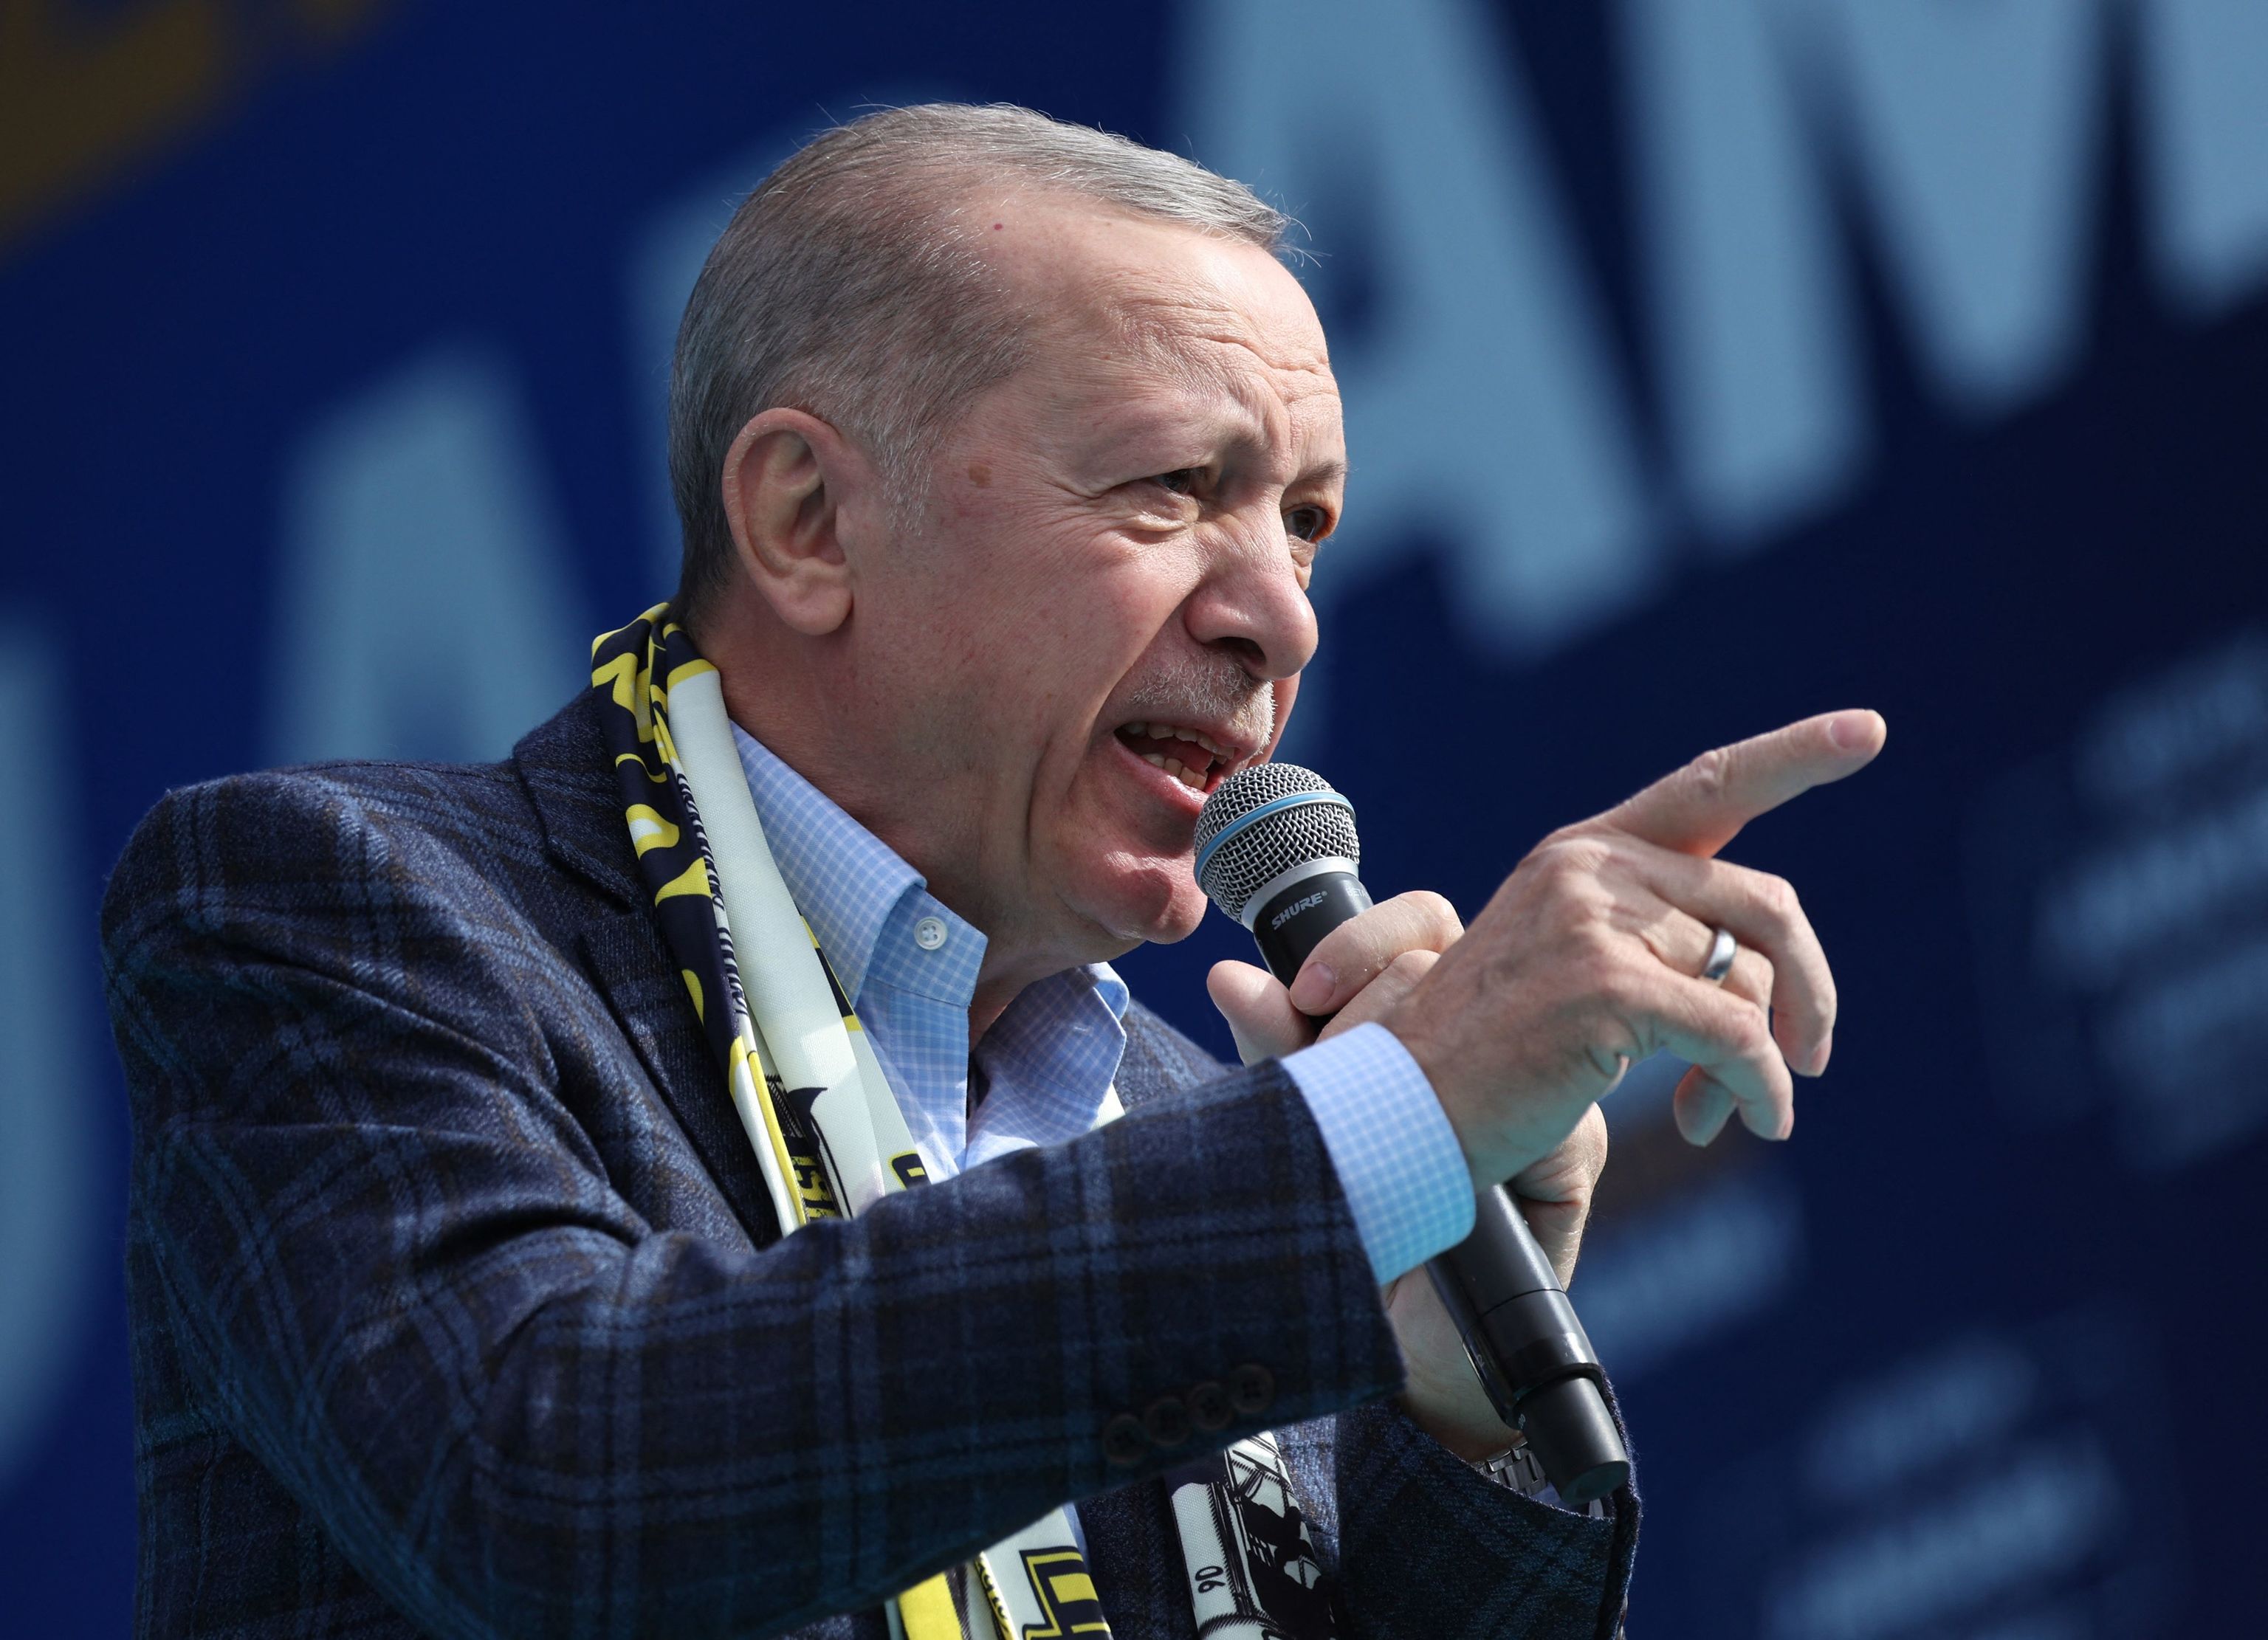 El presidente de Turqua, Recep Tayyip Erdogan, en una imagen reciente.